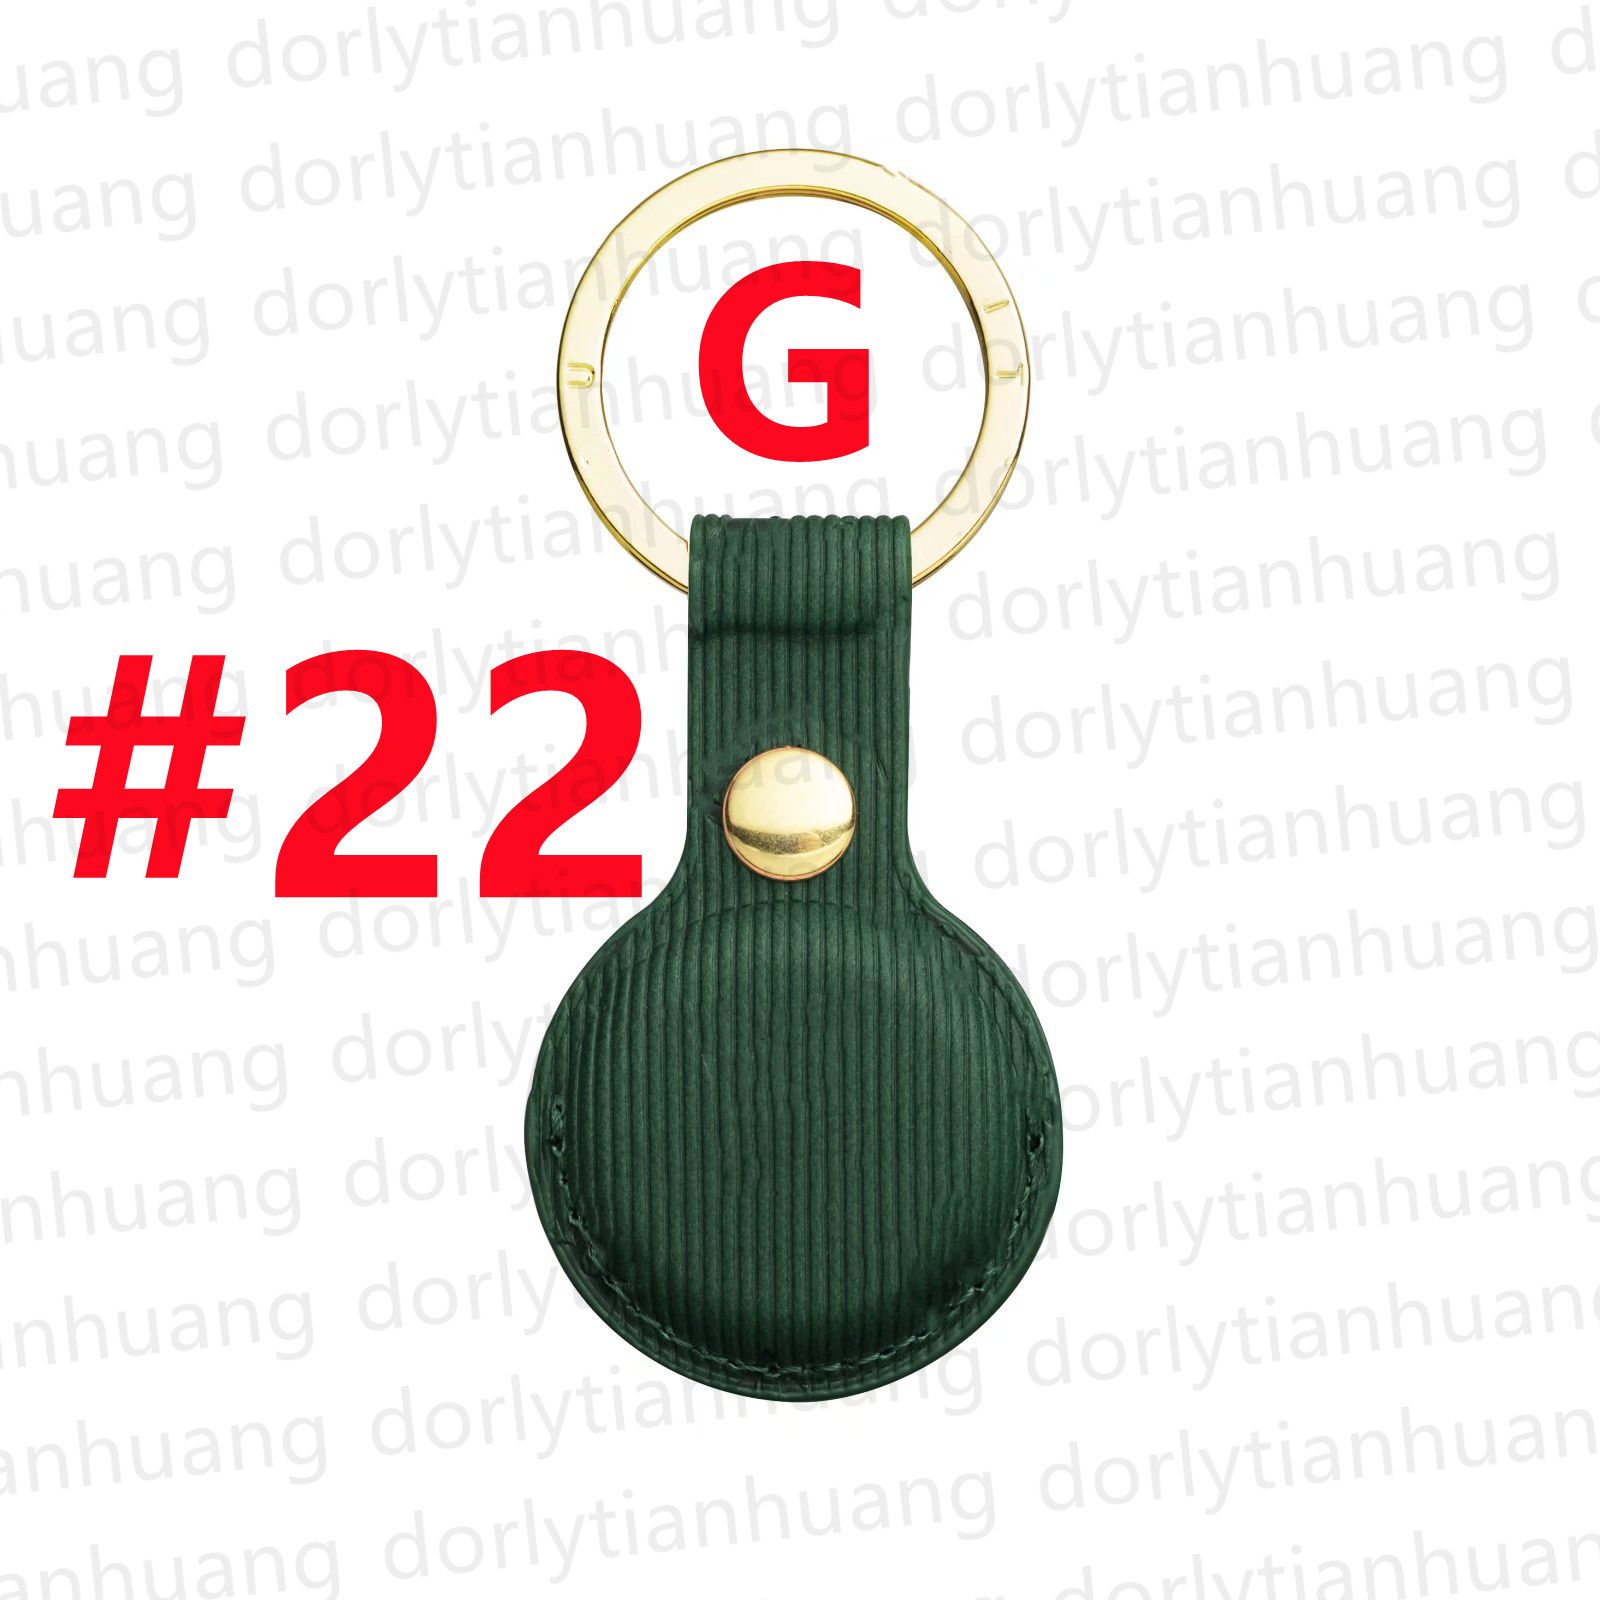 # 22 녹색 [G] 문자 + 로고